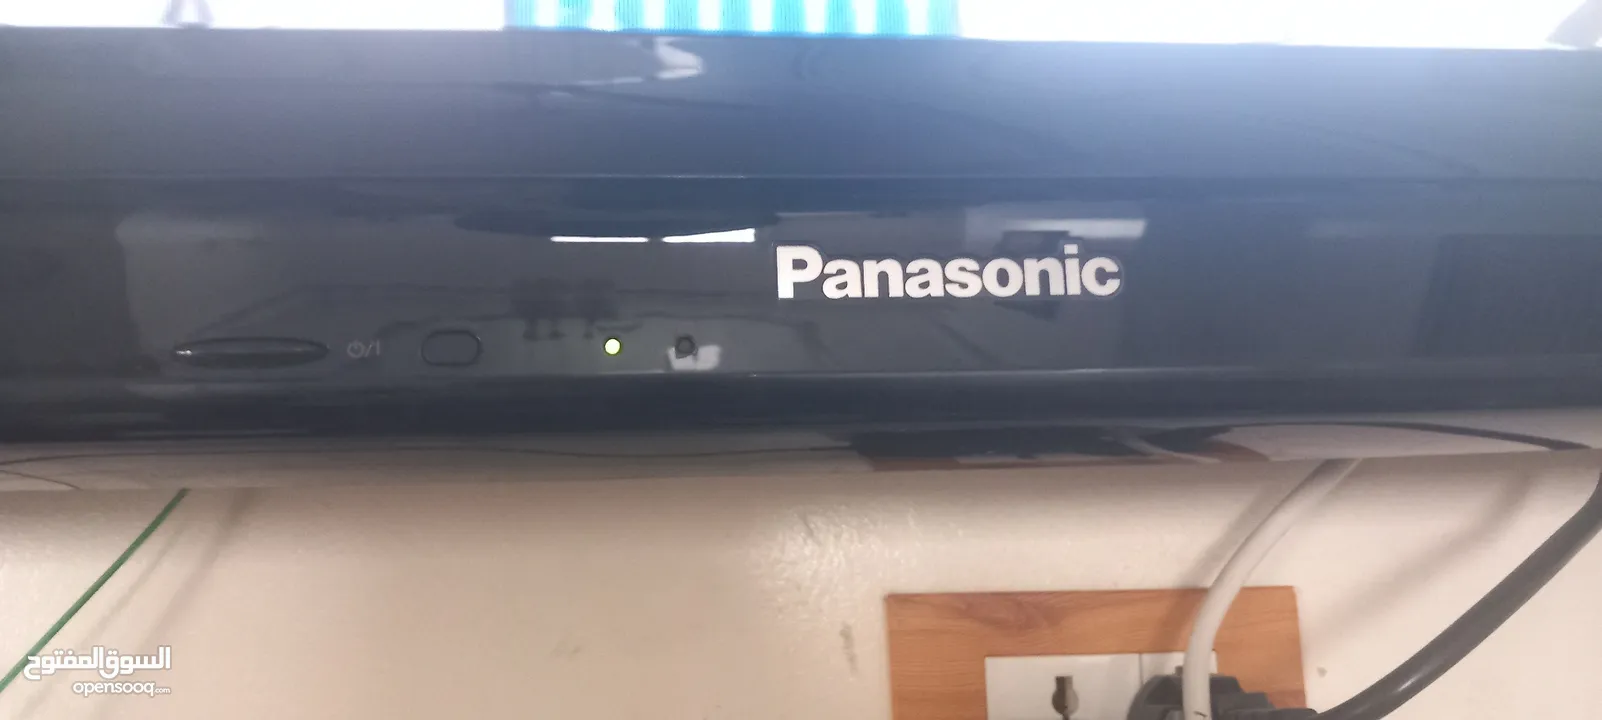 شاشة Panasonic